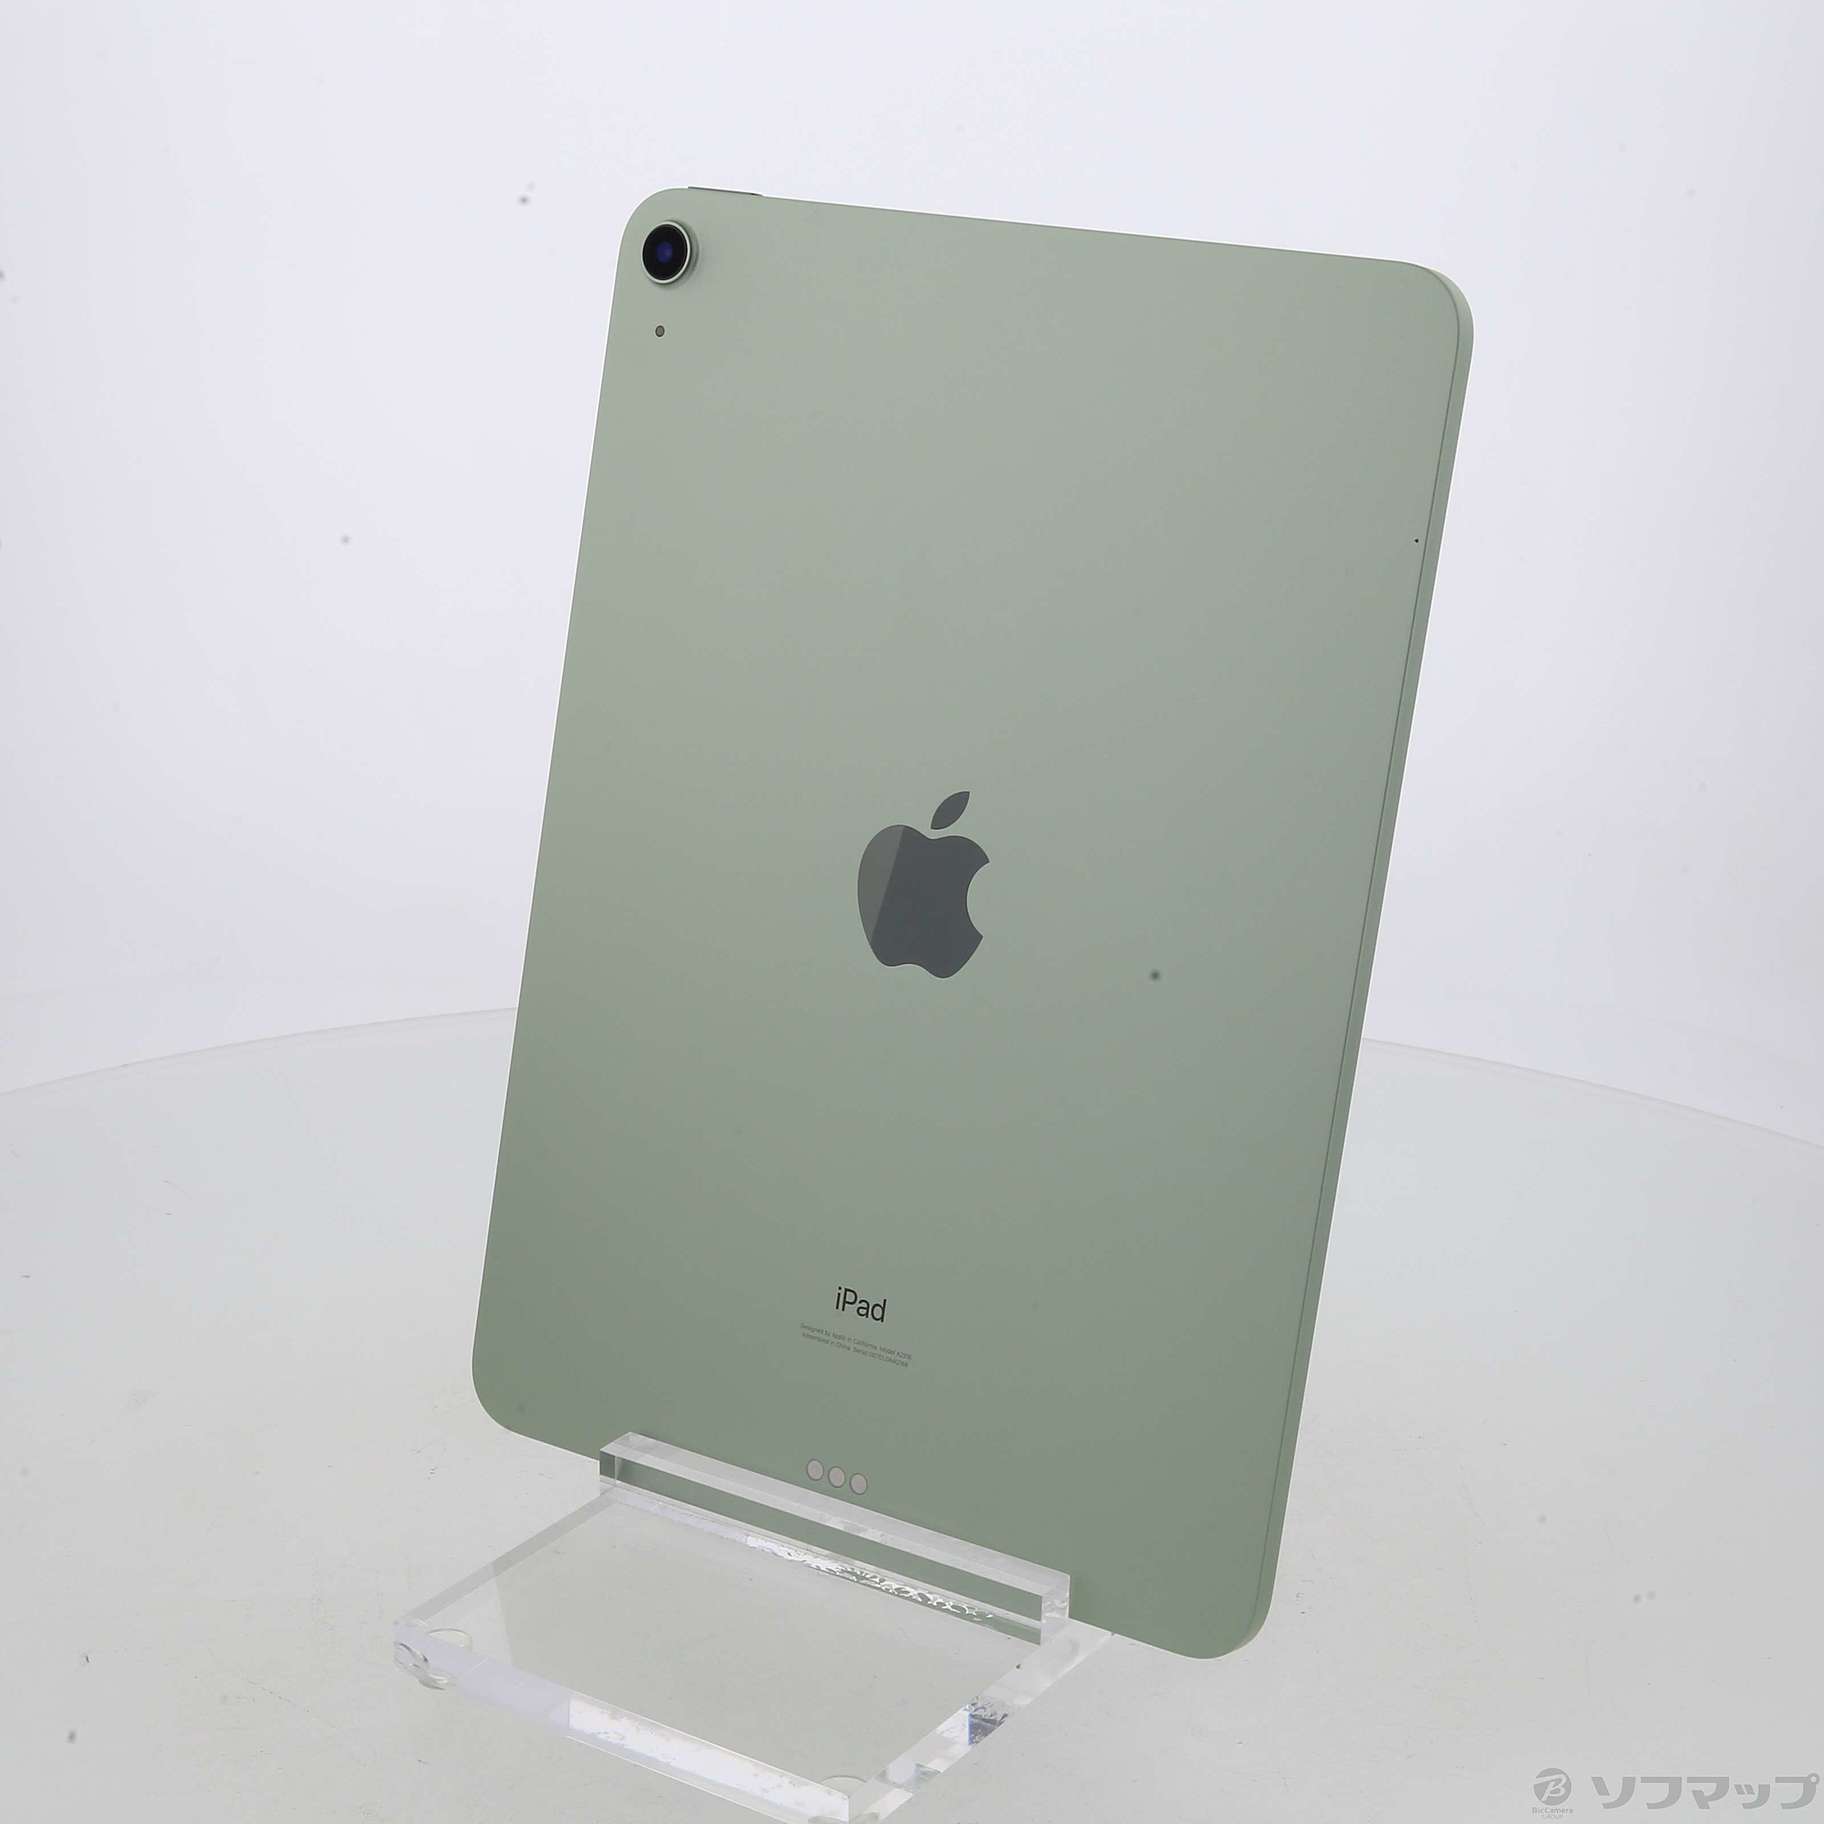 熱い販売 【新品未使用】iPad グリーン WiFi 64GB Air4 タブレット